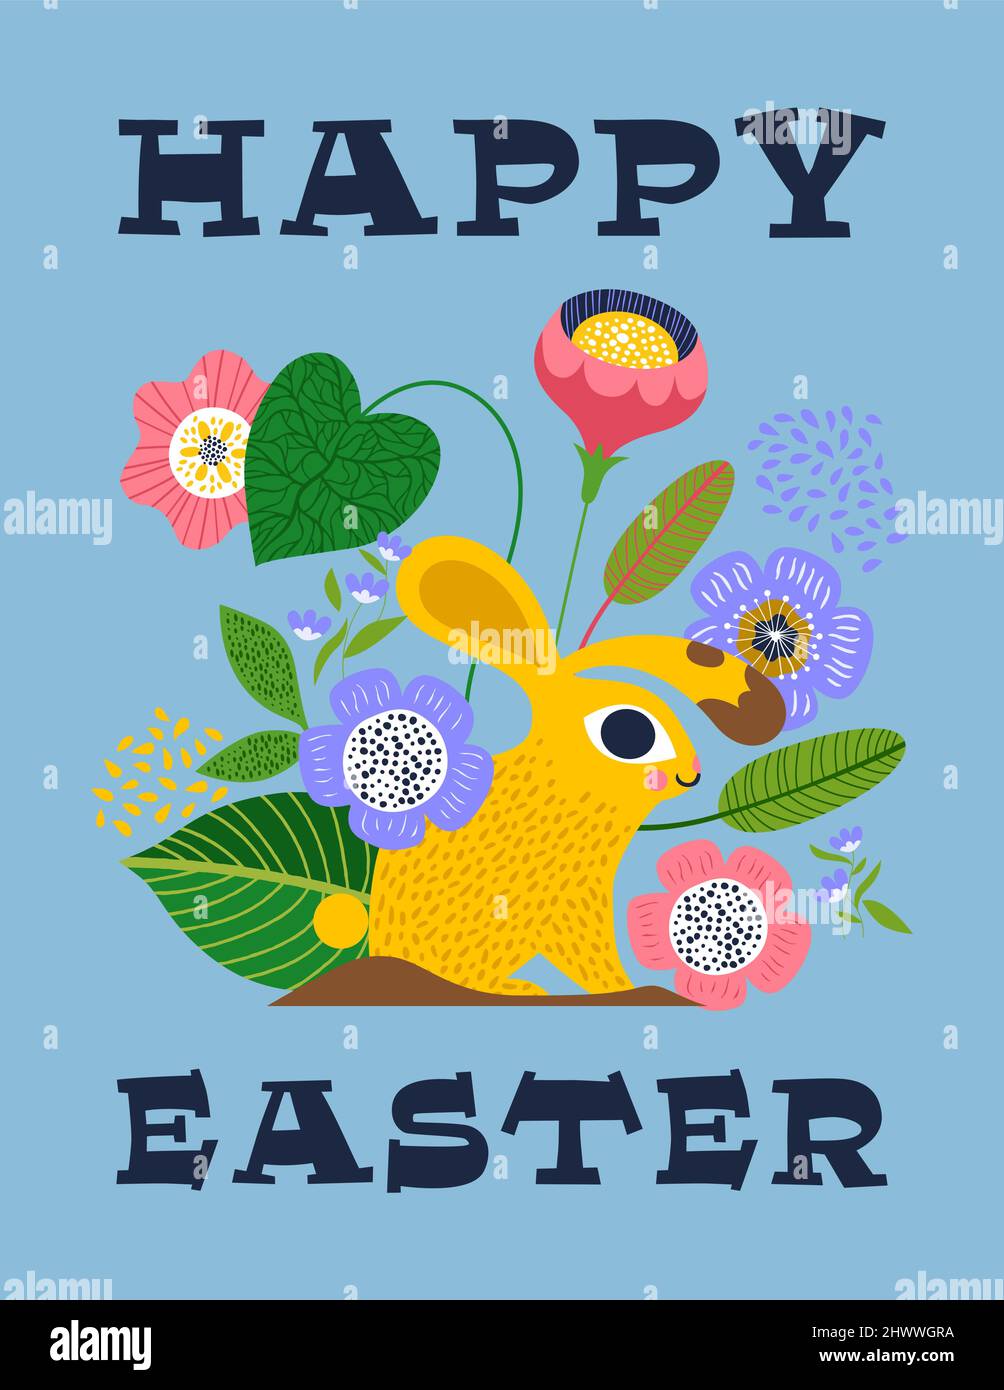 Feliz Pascua tarjeta de felicitación de animal de conejo divertido en estilo de arte popular con decoración de la naturaleza. Ilustración de fondo del festival de primavera para el tradicional ch Ilustración del Vector